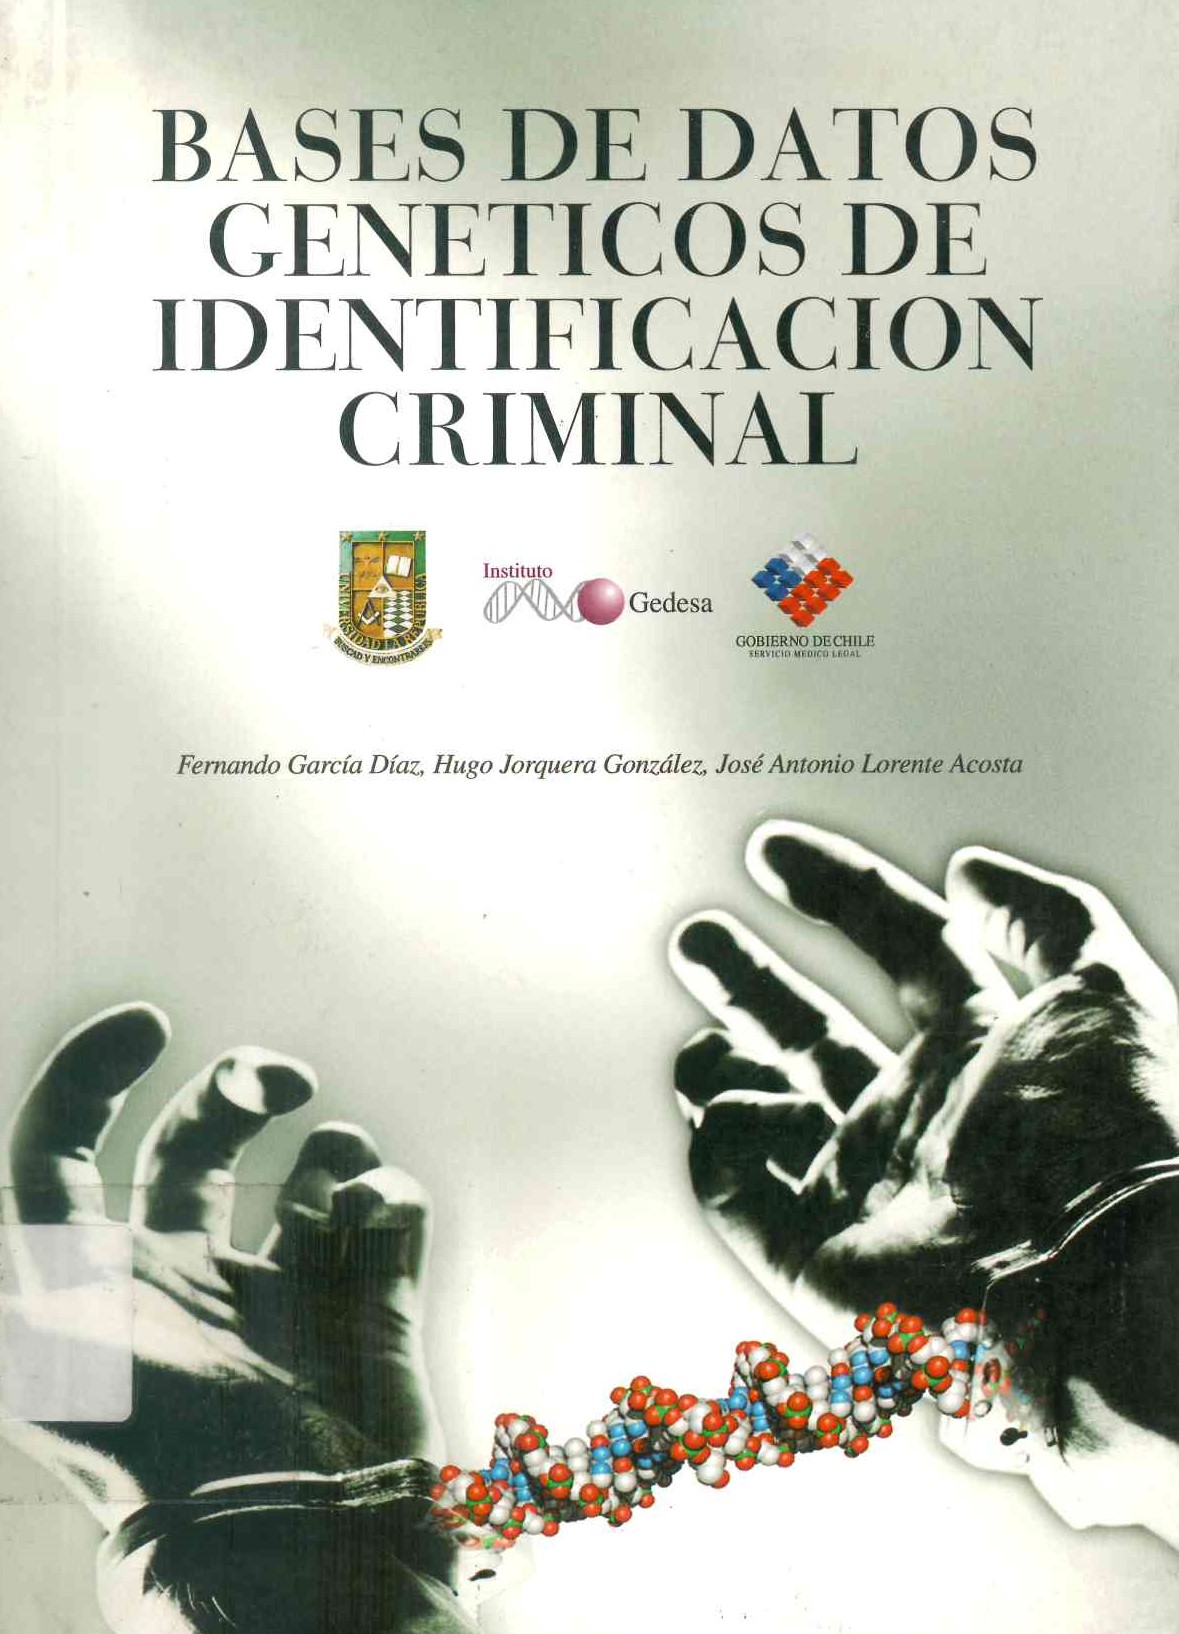 Bases de datos genéticos de identificación criminal